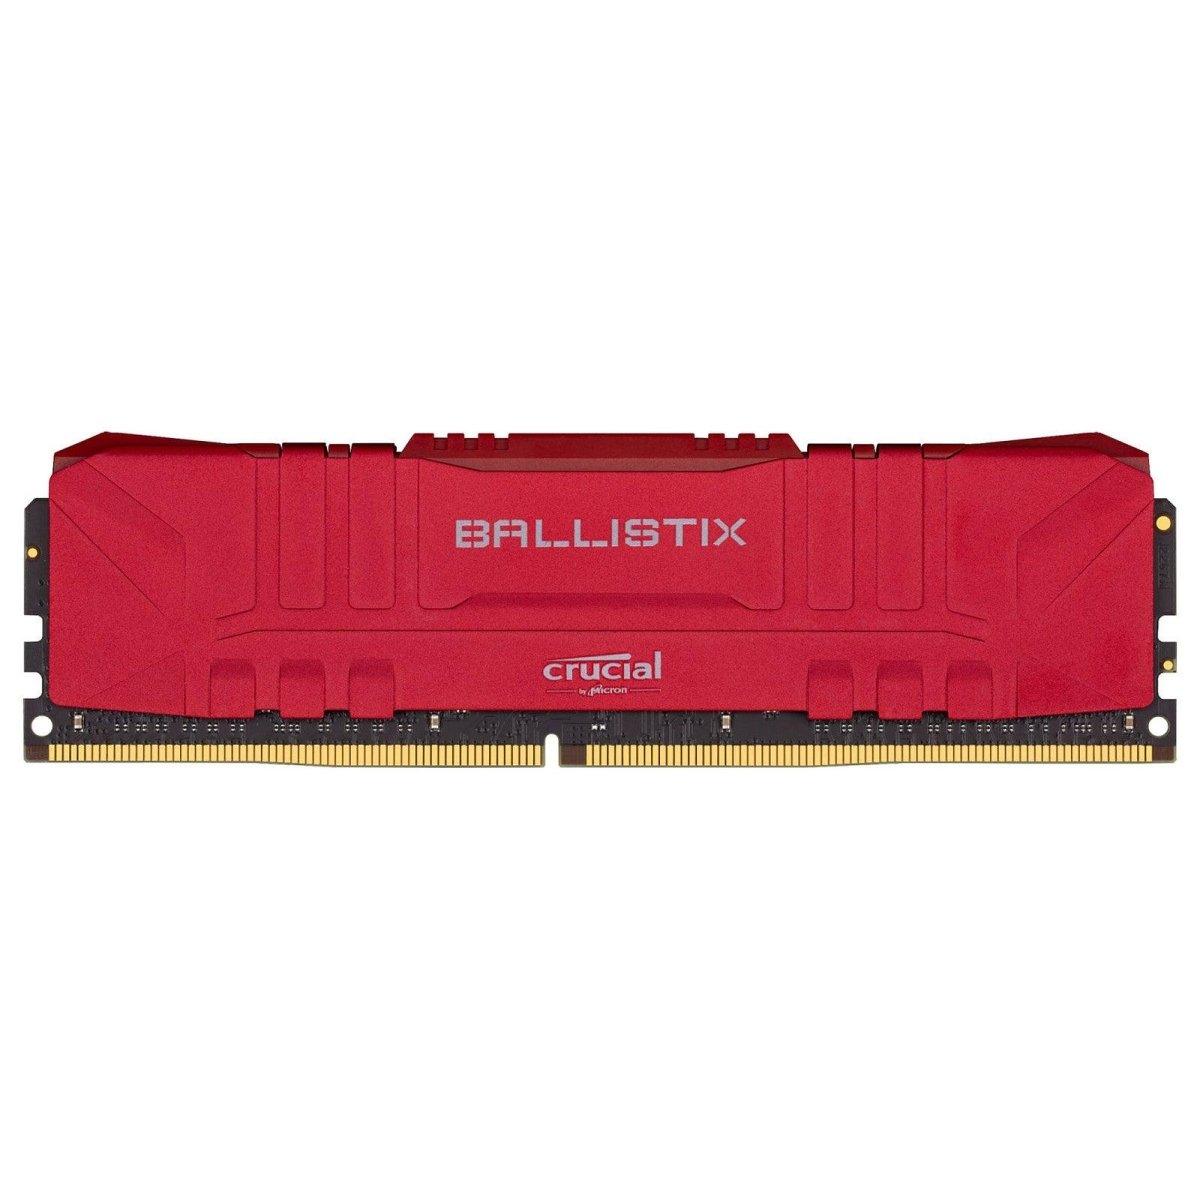 Crucial Ballistix rouge 16 Go (2 x 8 Go)  DDR4 3000 MHz CL15maroc Prix Barrette Memoire ram pas cher - smartmarket.ma